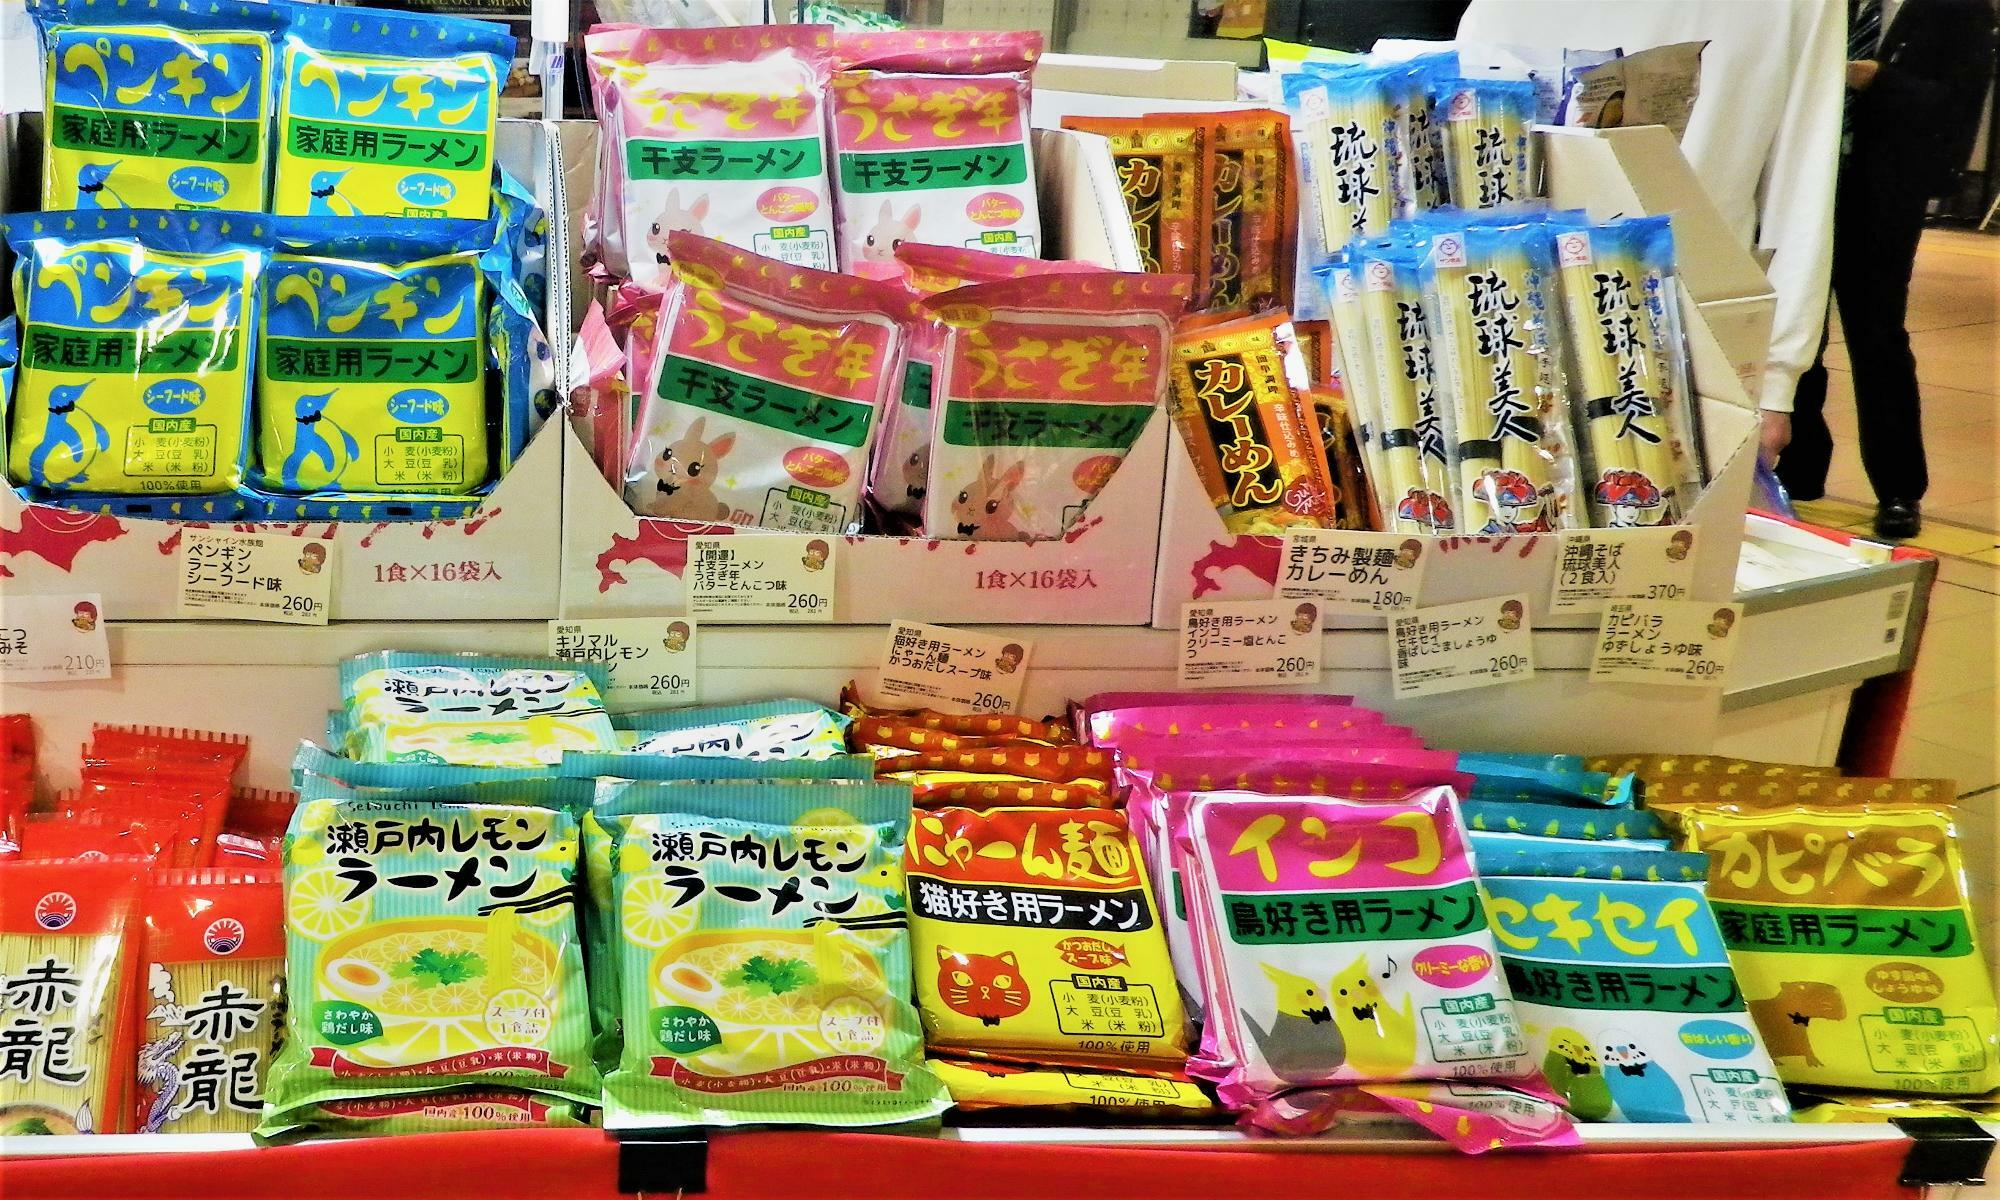 愛知県にある小笠原製粉株式会社のキリマルラーメンという商品。